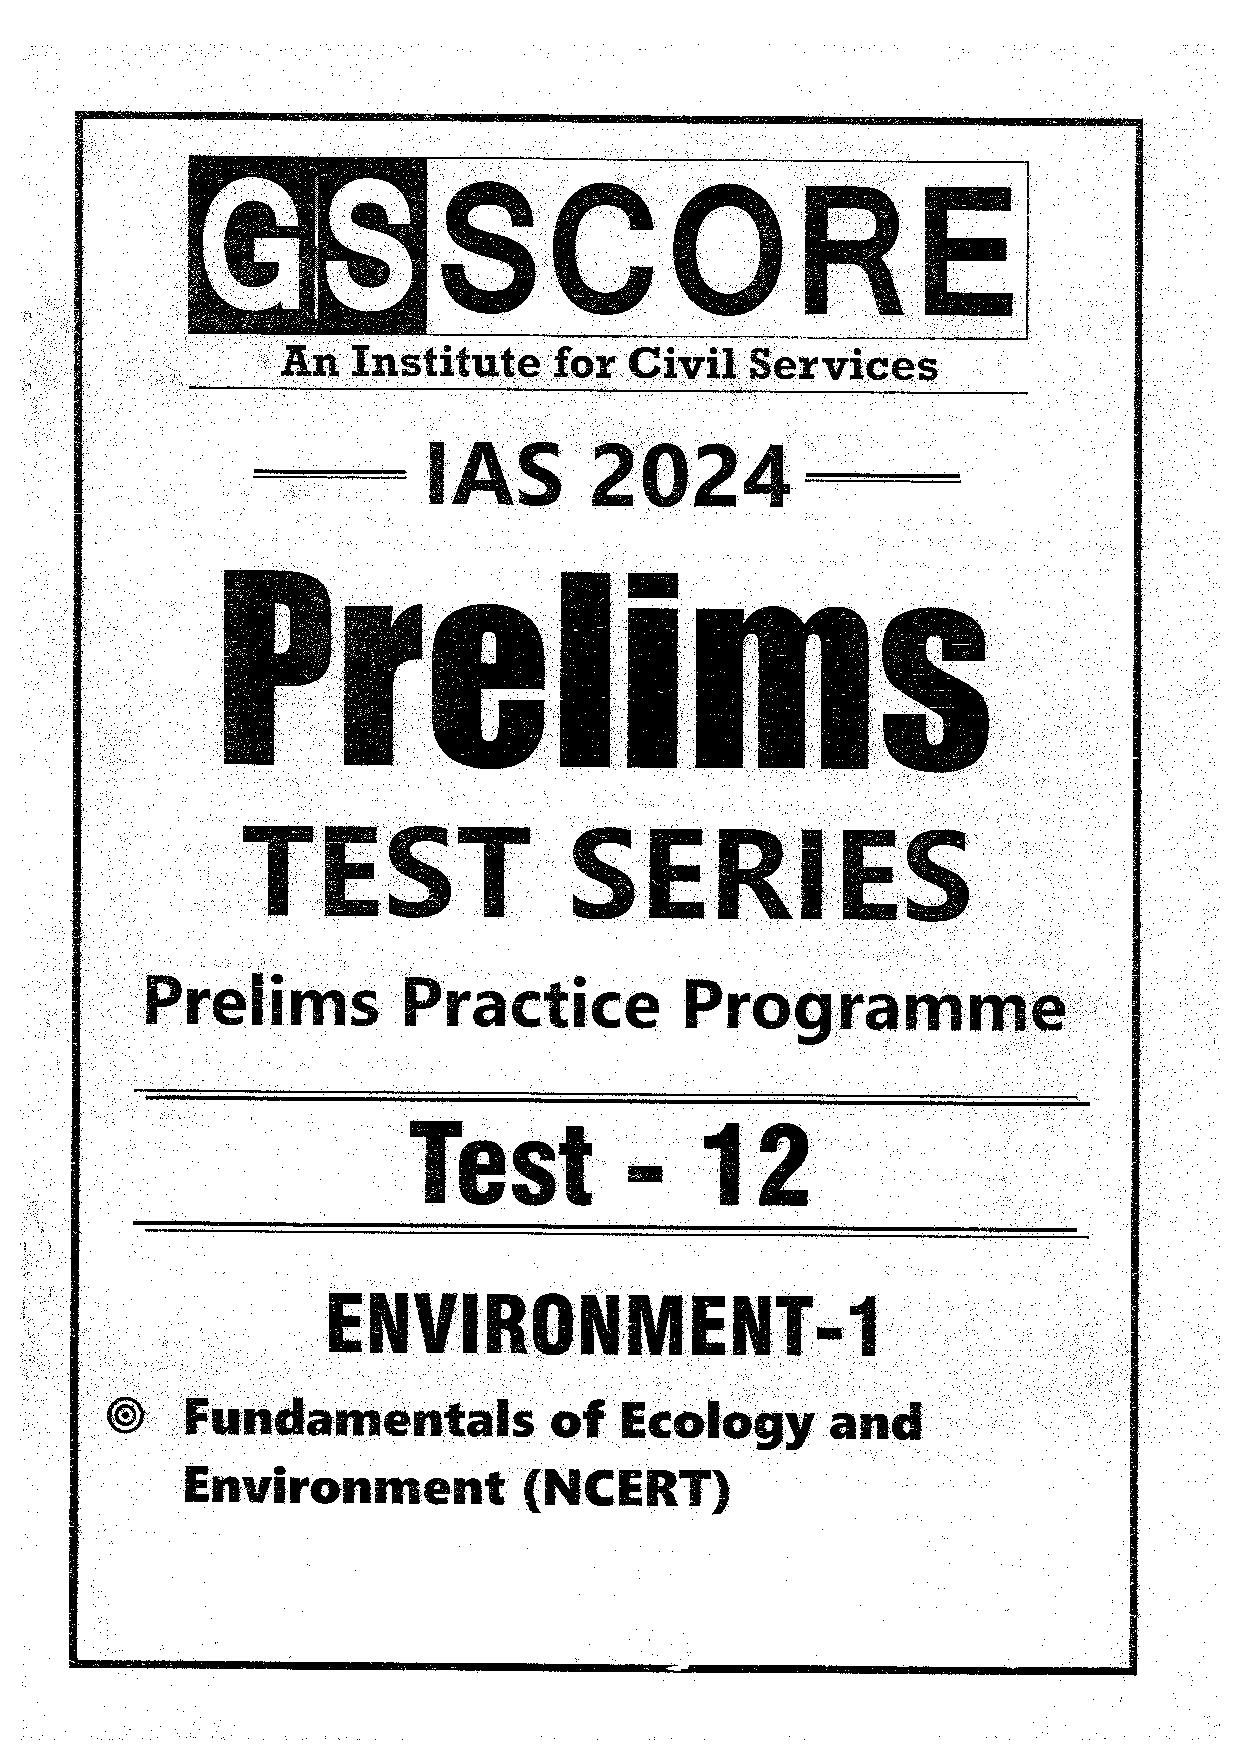 GS SCORE PRELIMS TEST SERIES 2024 Practice Programme